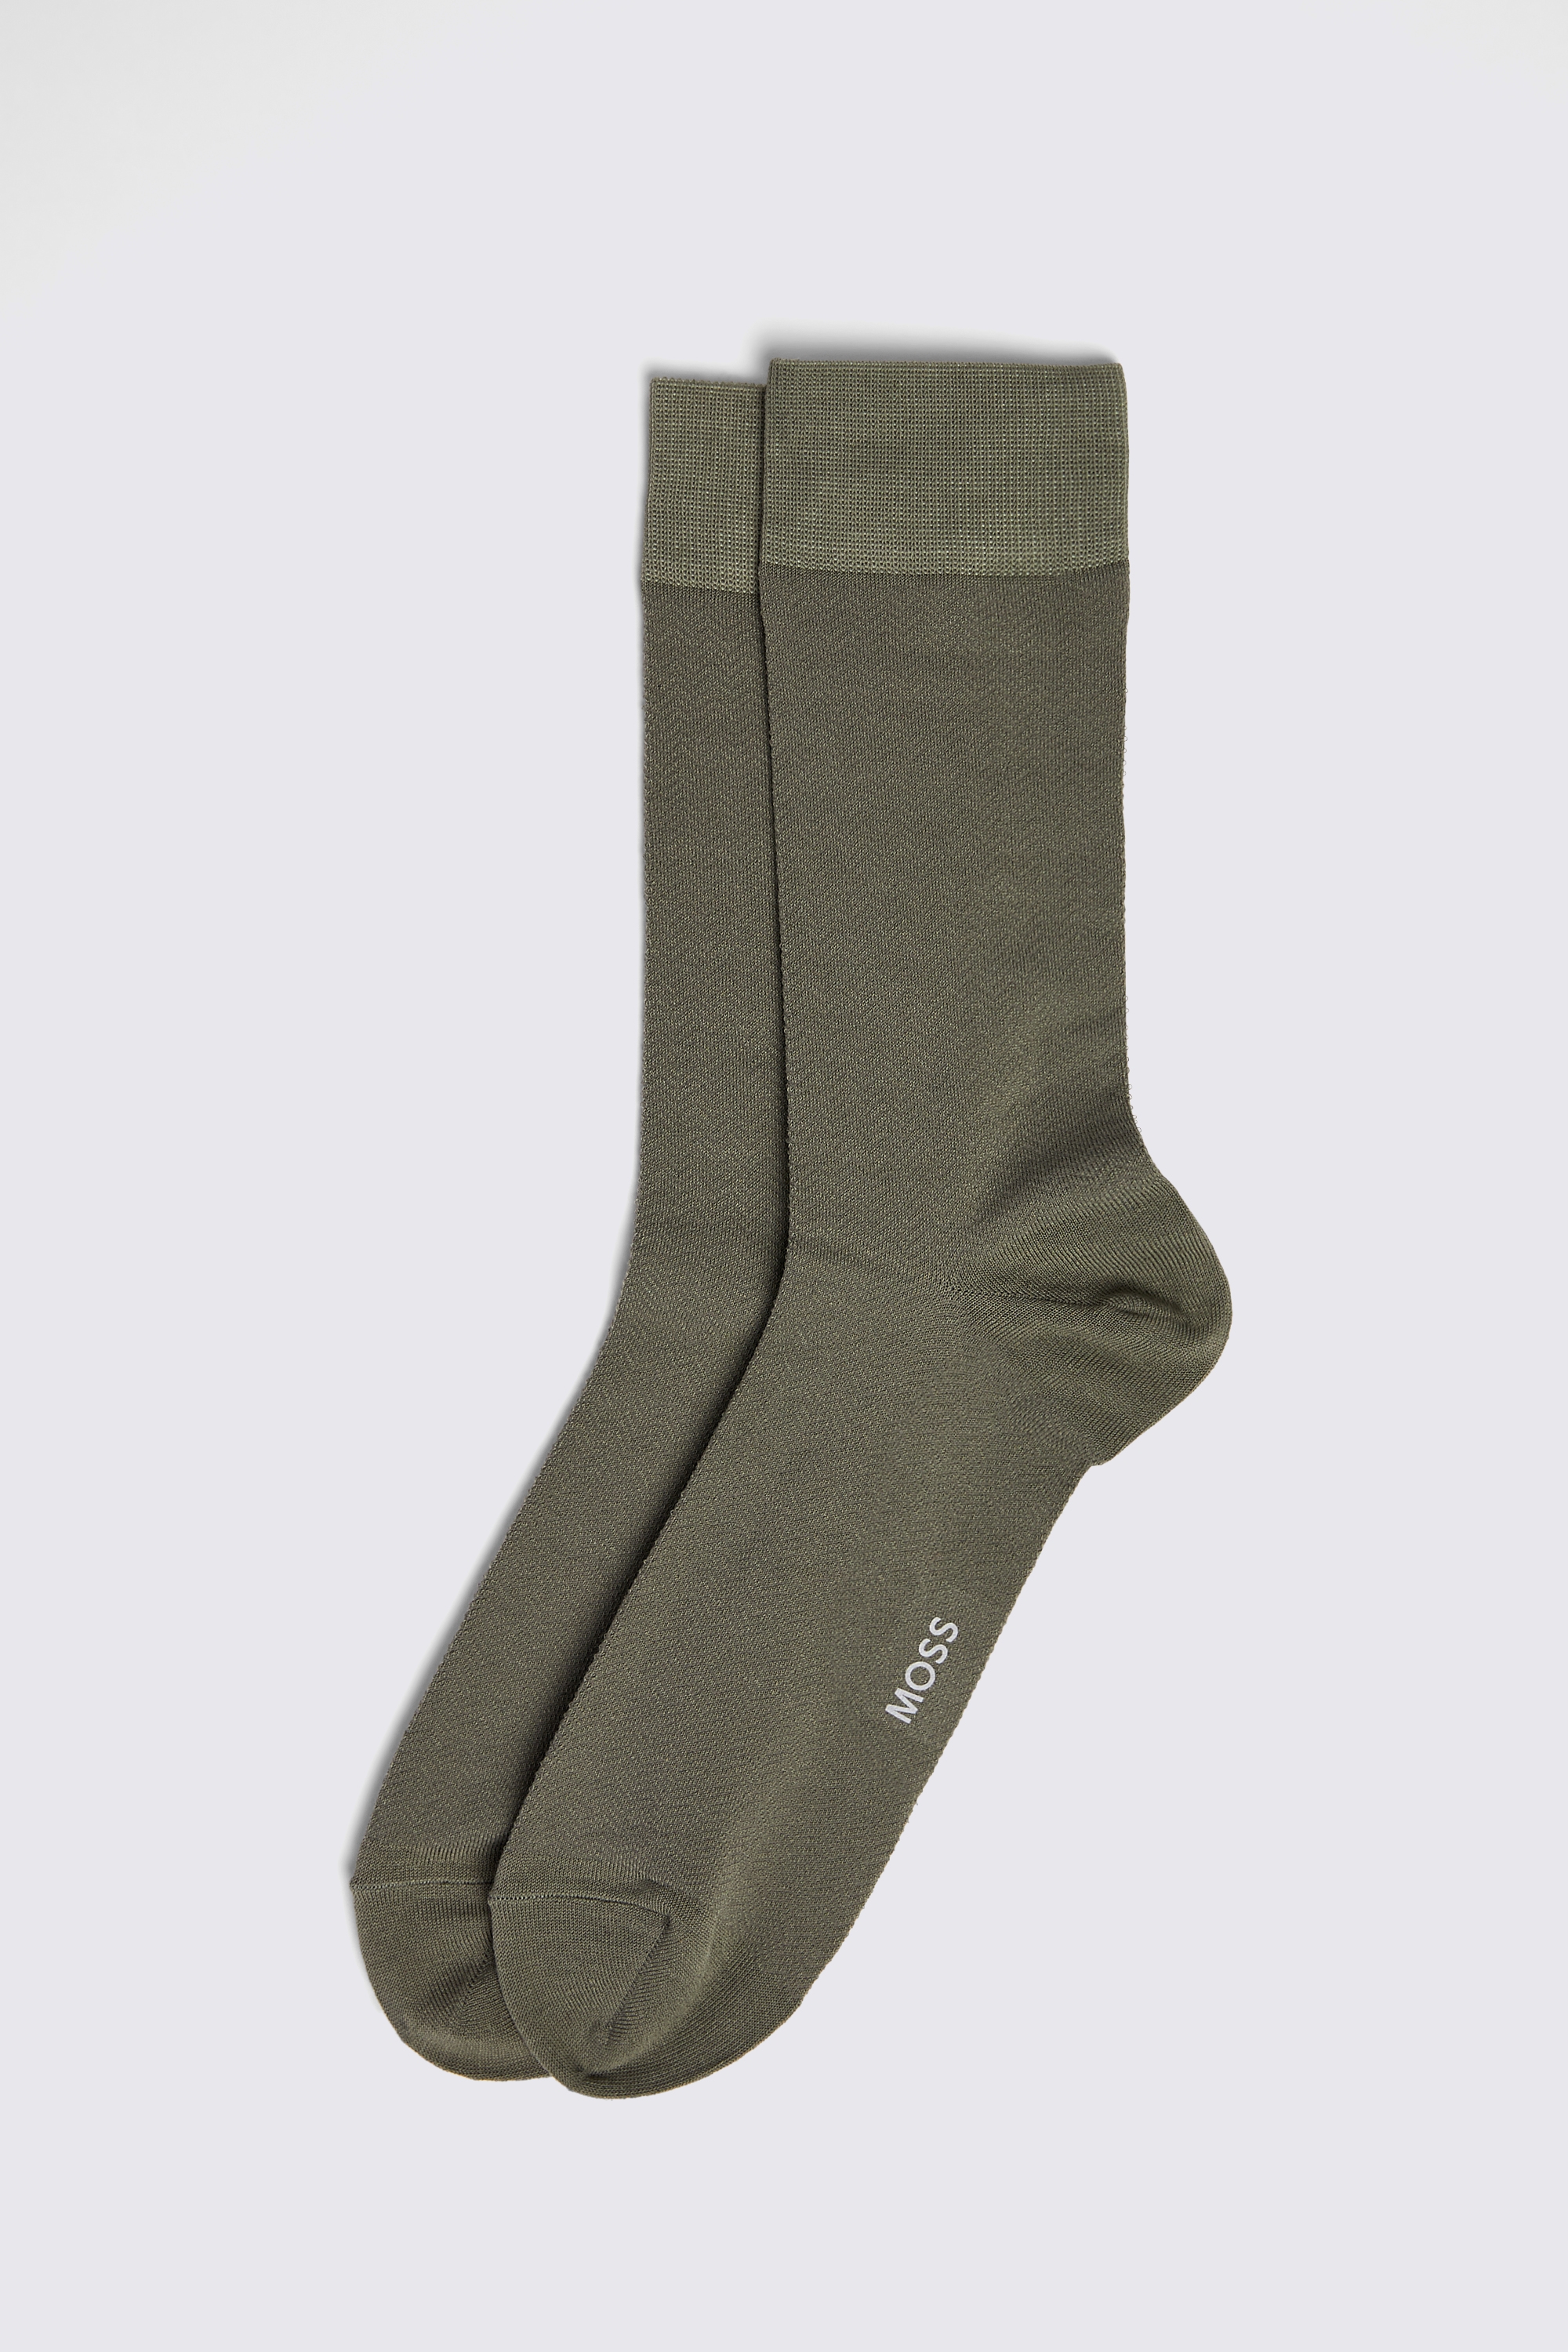 Sage Herringbone Socks | Buy Online at Moss